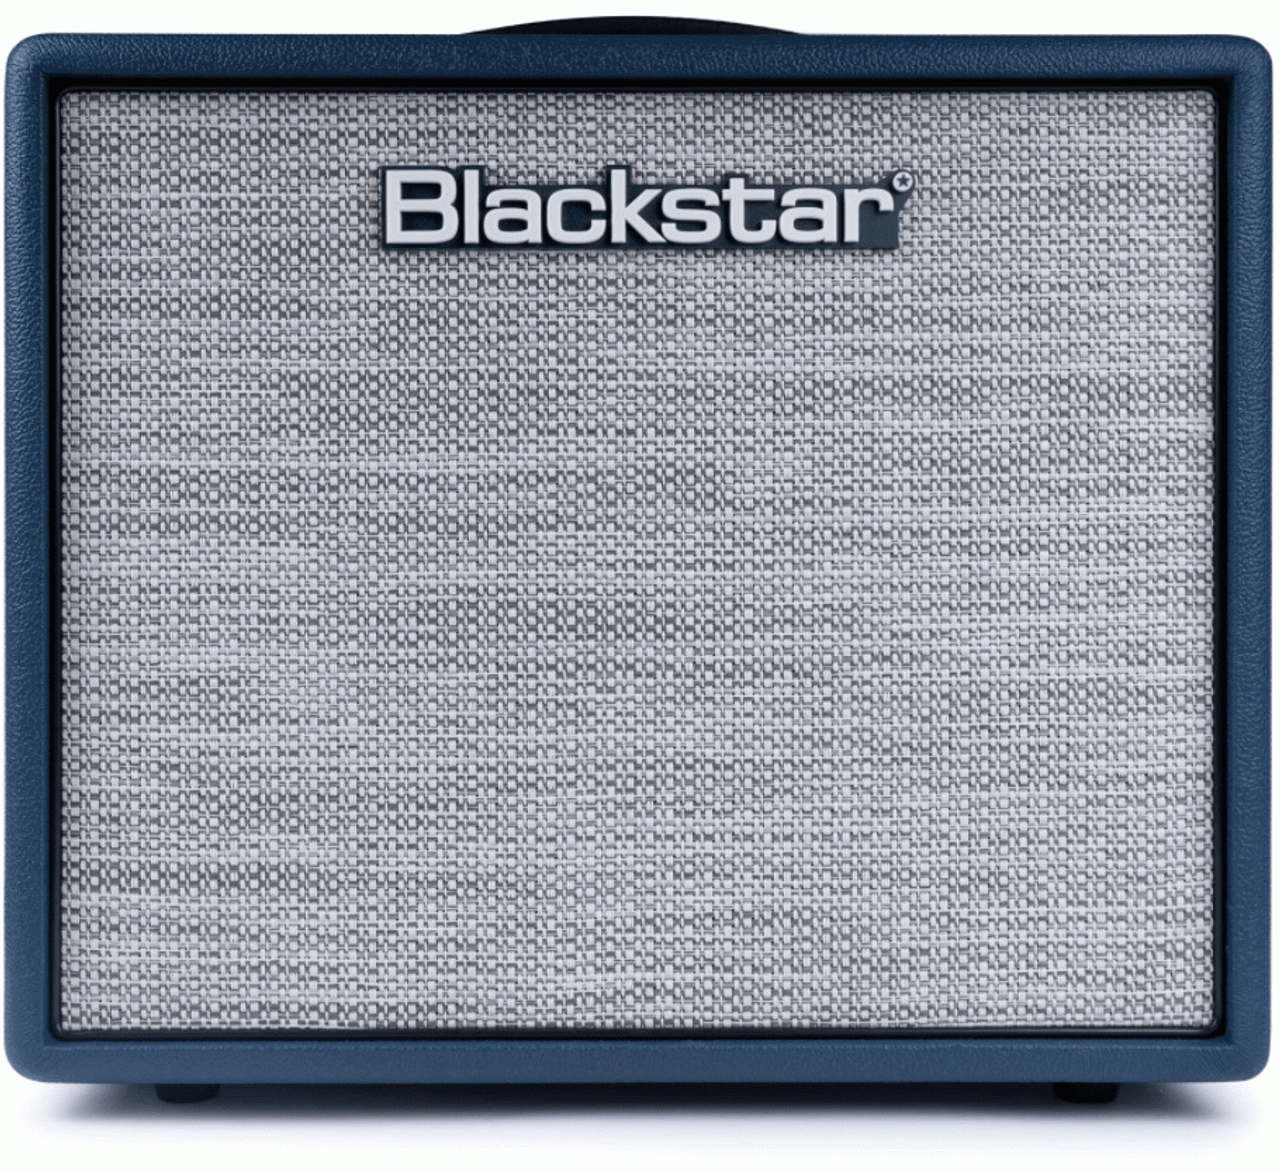 Blackstar Studio 10 Watt Royal Blue